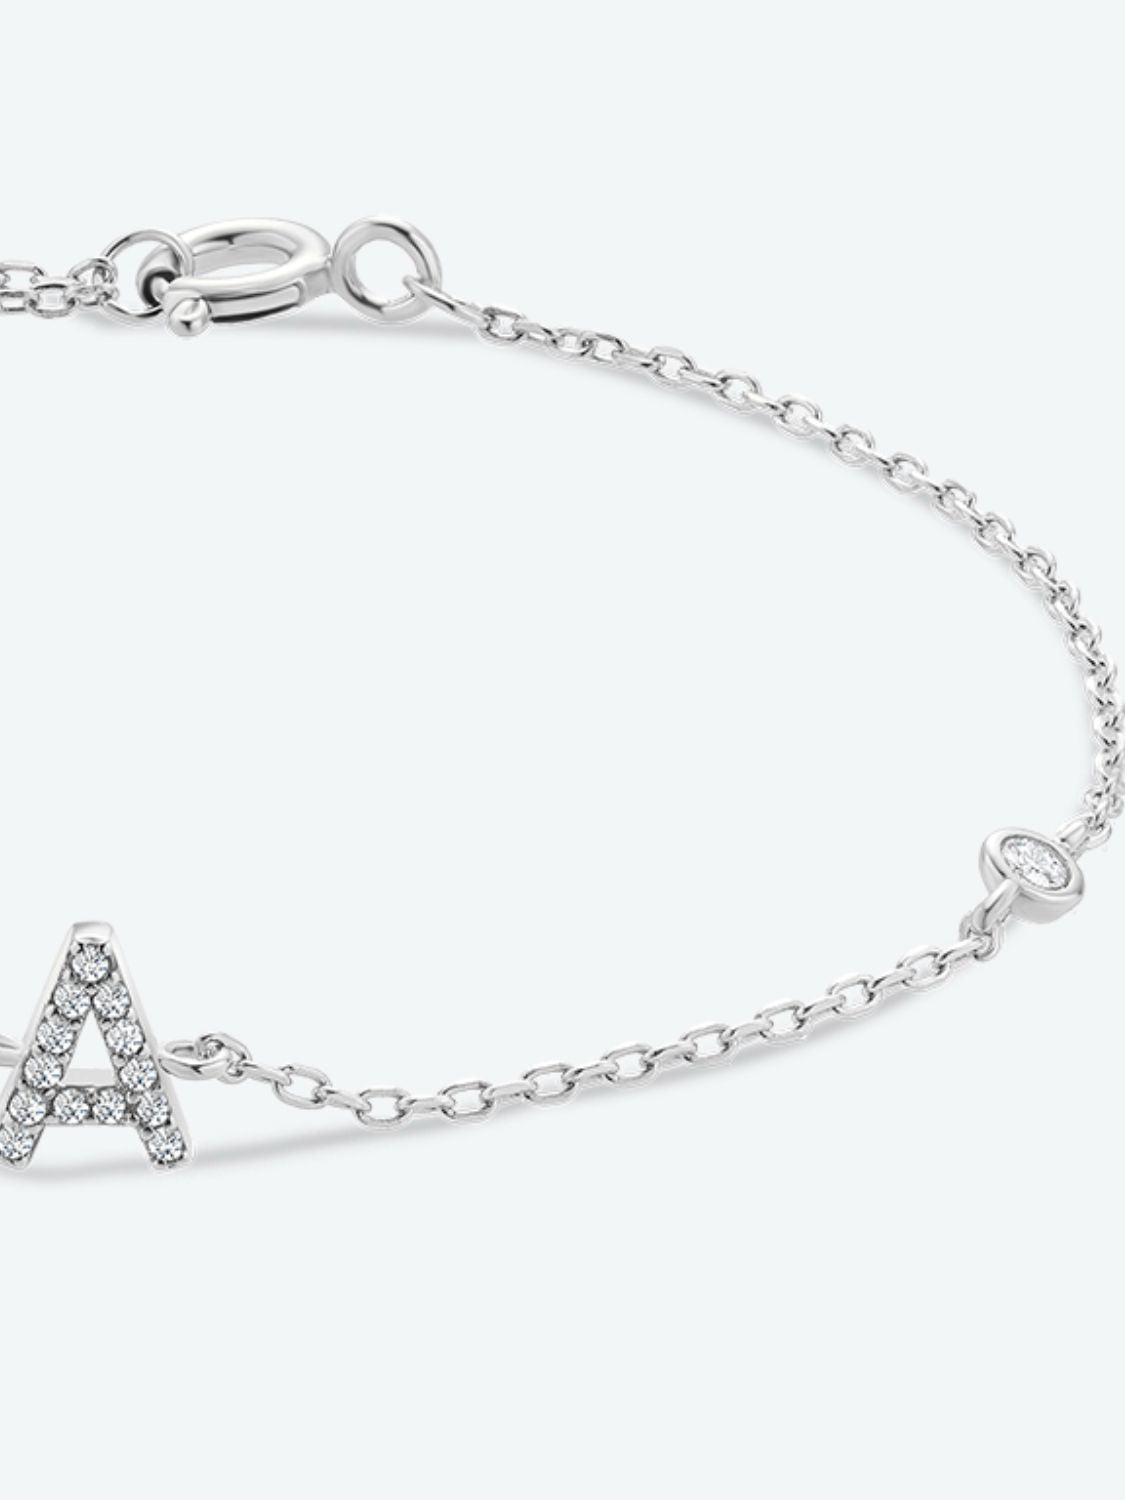 A To F Zircon 925 Sterling Silver Bracelet - Women’s Jewelry - Bracelets - 6 - 2024